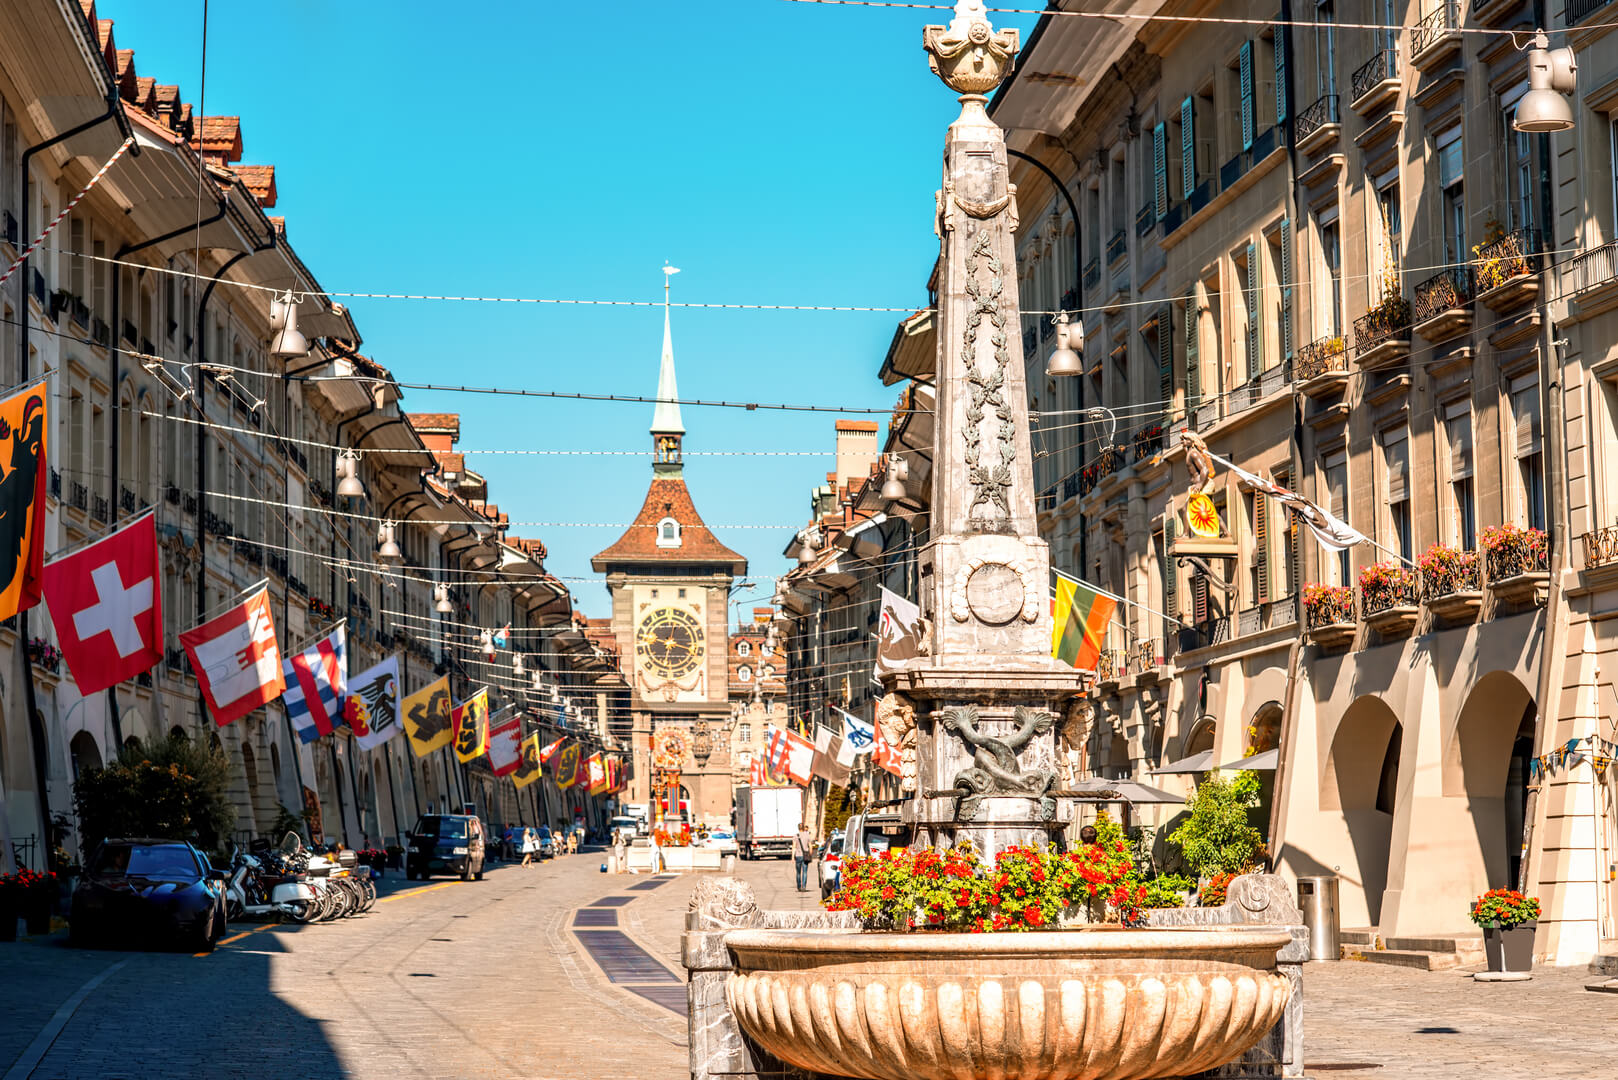 Vue de la rue Kramgasse avec la fontaine et la tour de l'horloge dans la vieille ville de Berne. C'est une rue commerçante populaire et le centre médiéval de la ville de Berne, en Suisse.